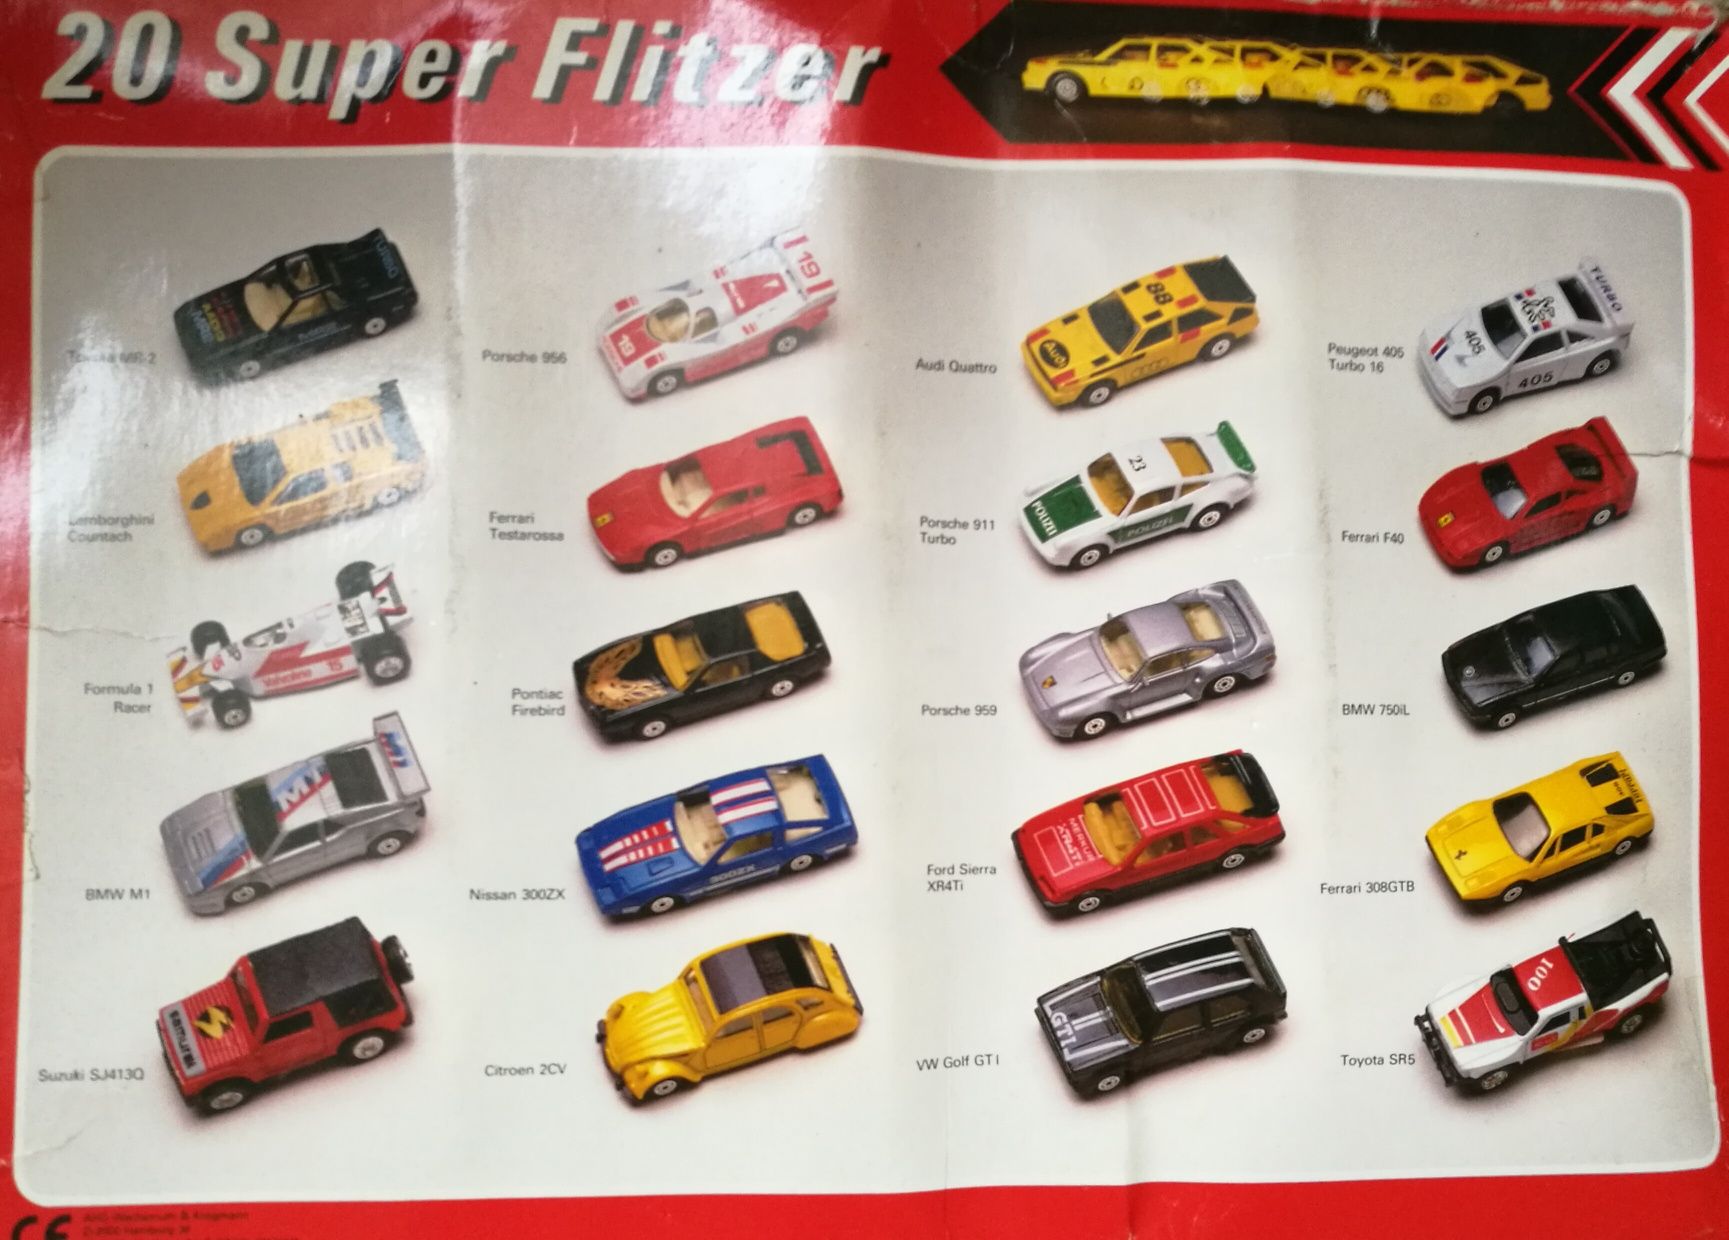 20 Super Flitzer MC Toy -Resoraki dawne samochodziki z zachodu